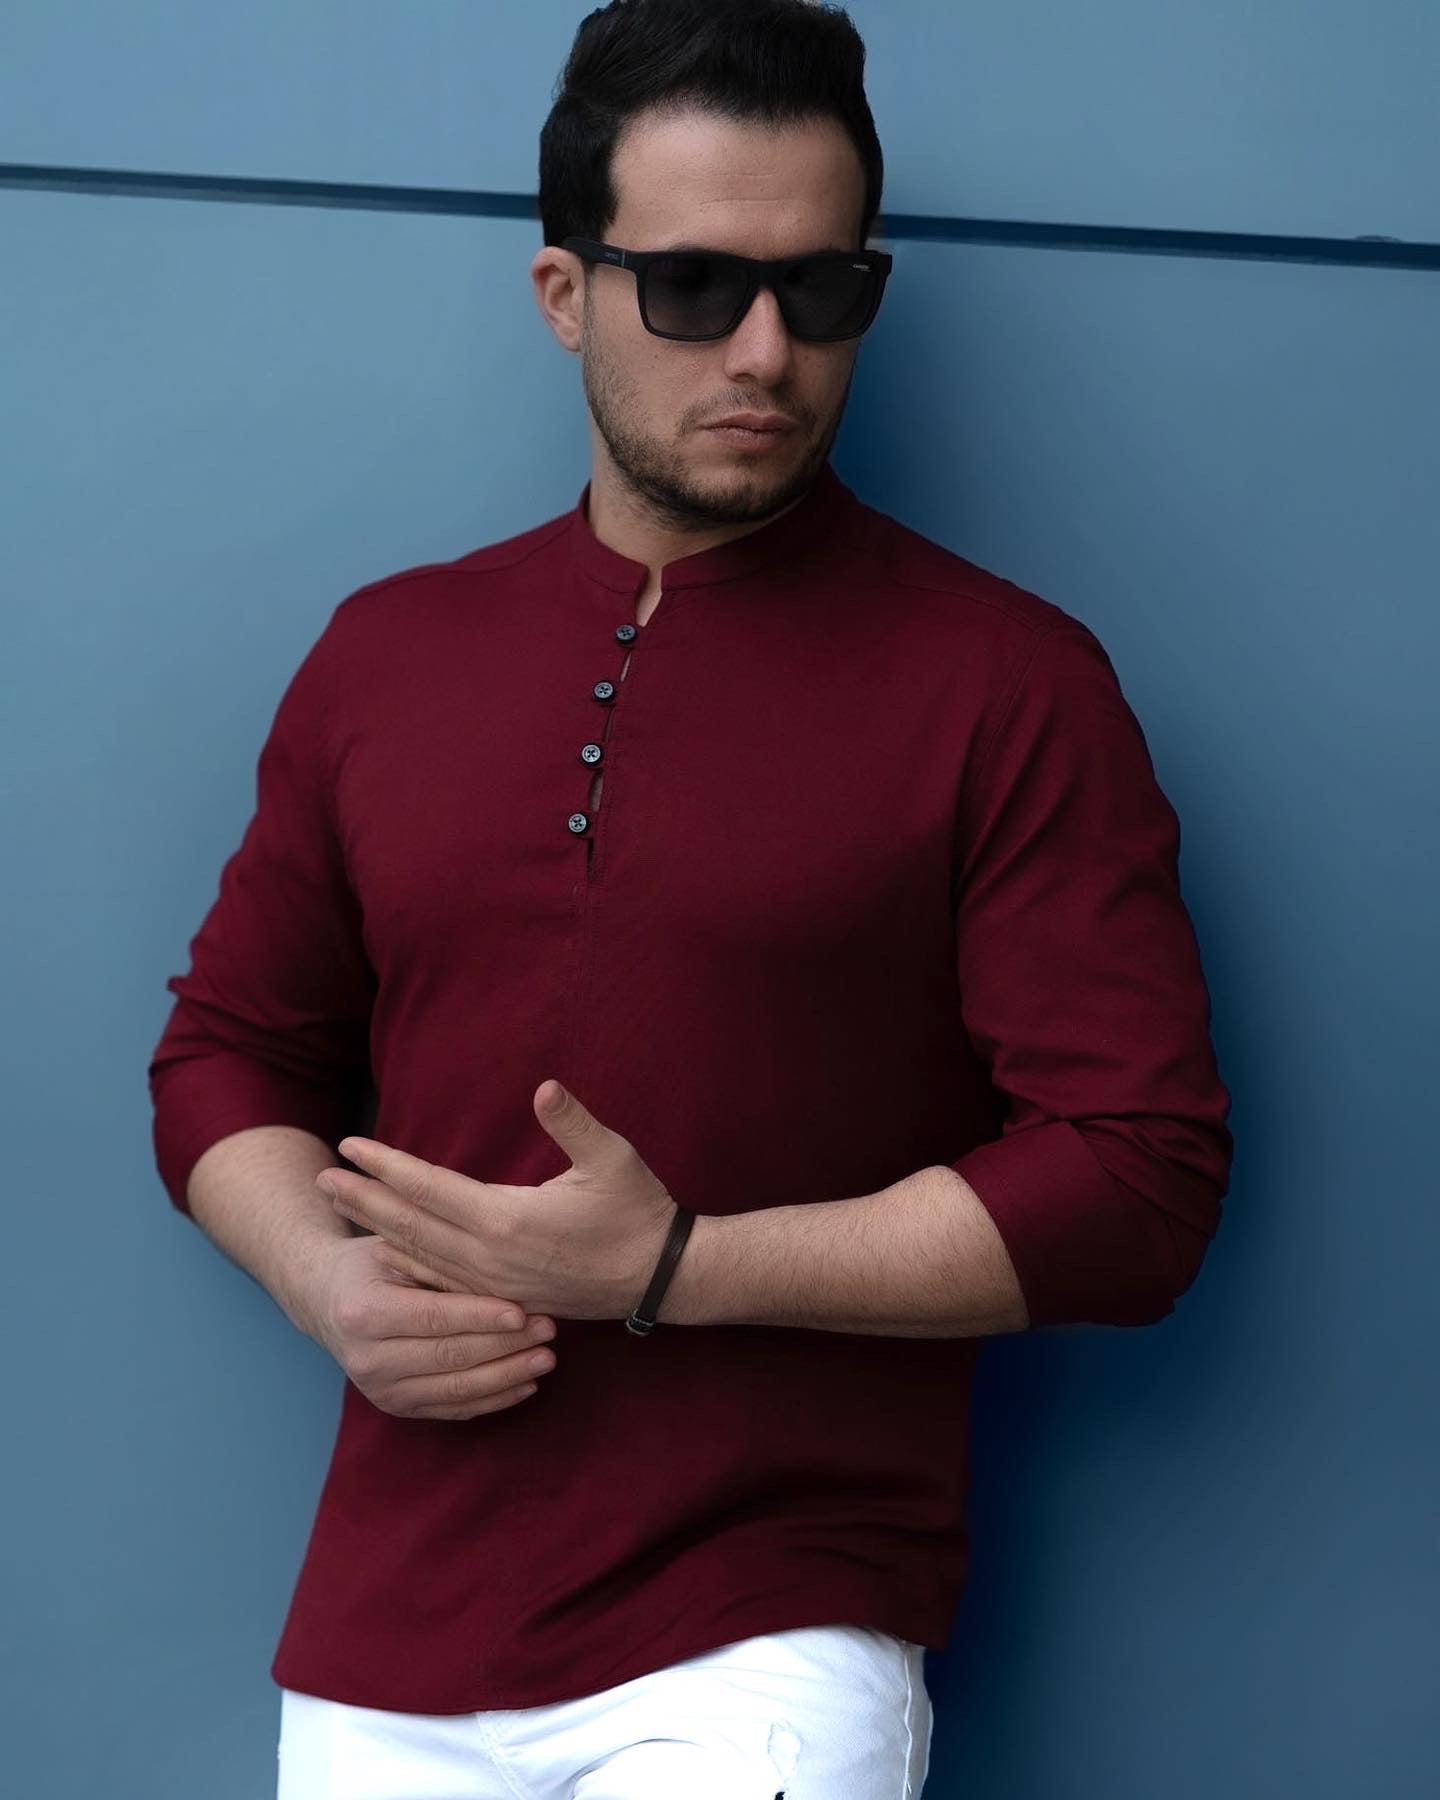 Модна сорочка бордового кольору з дизайнерською застібкою XL  44-109-704